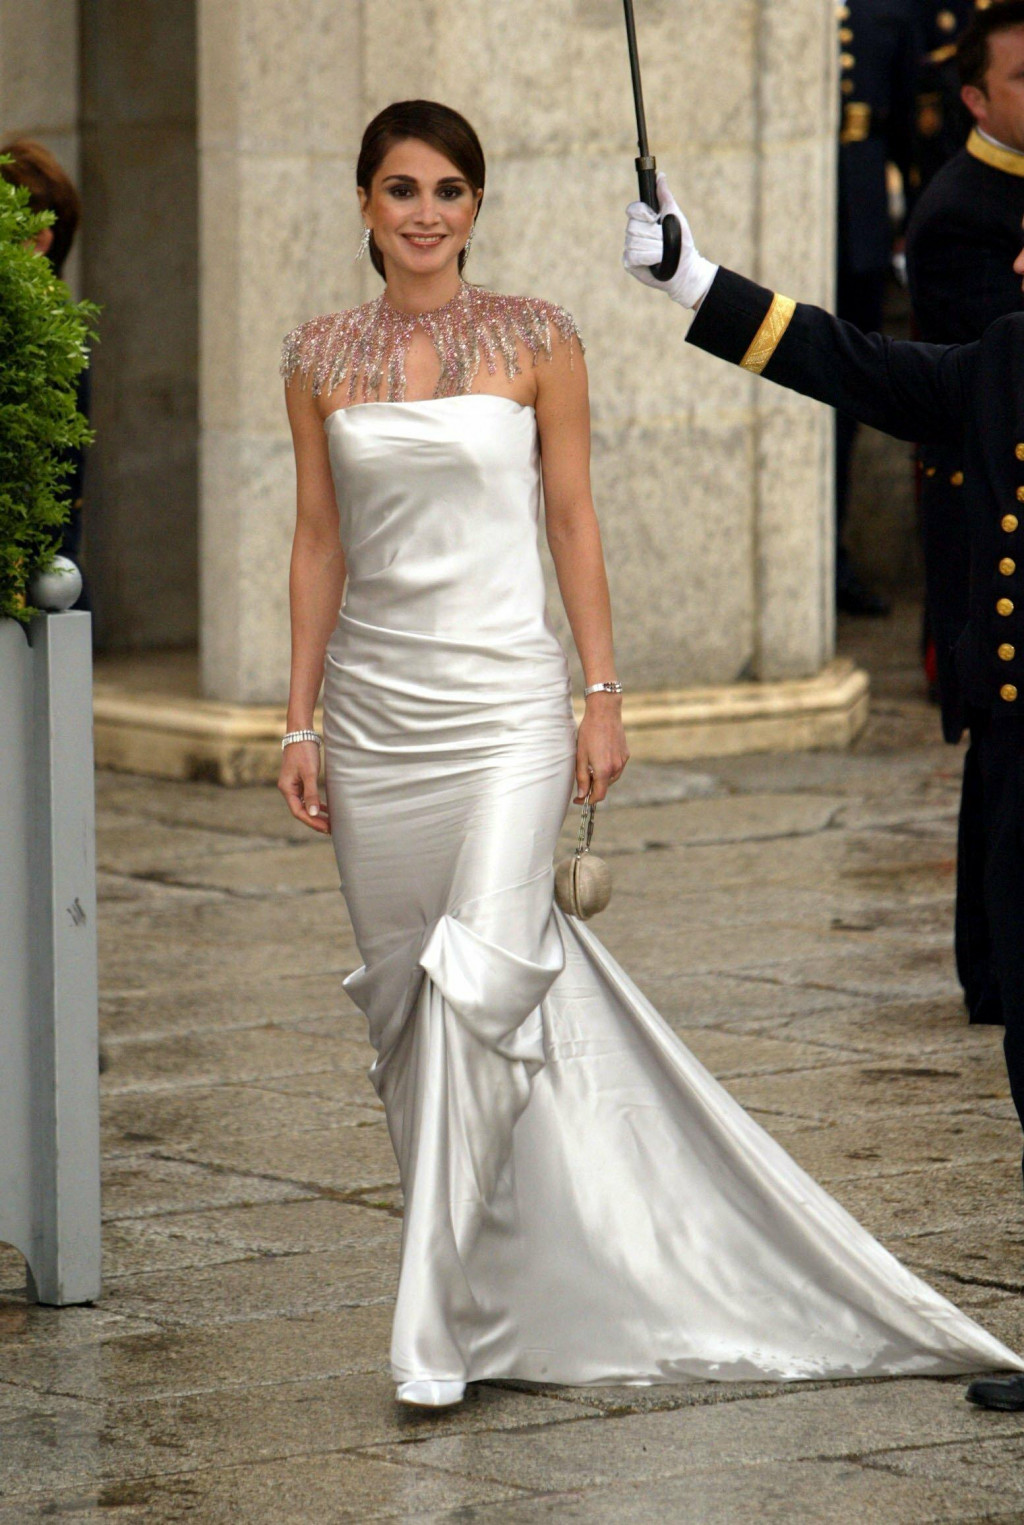 &lt;p&gt;Kraljica Rania u svibnju 2004. na gala večeri uoči vjenčanja princa Felipea i Letizije Ortiz, sada španjolskog kralja i kraljice&lt;/p&gt;